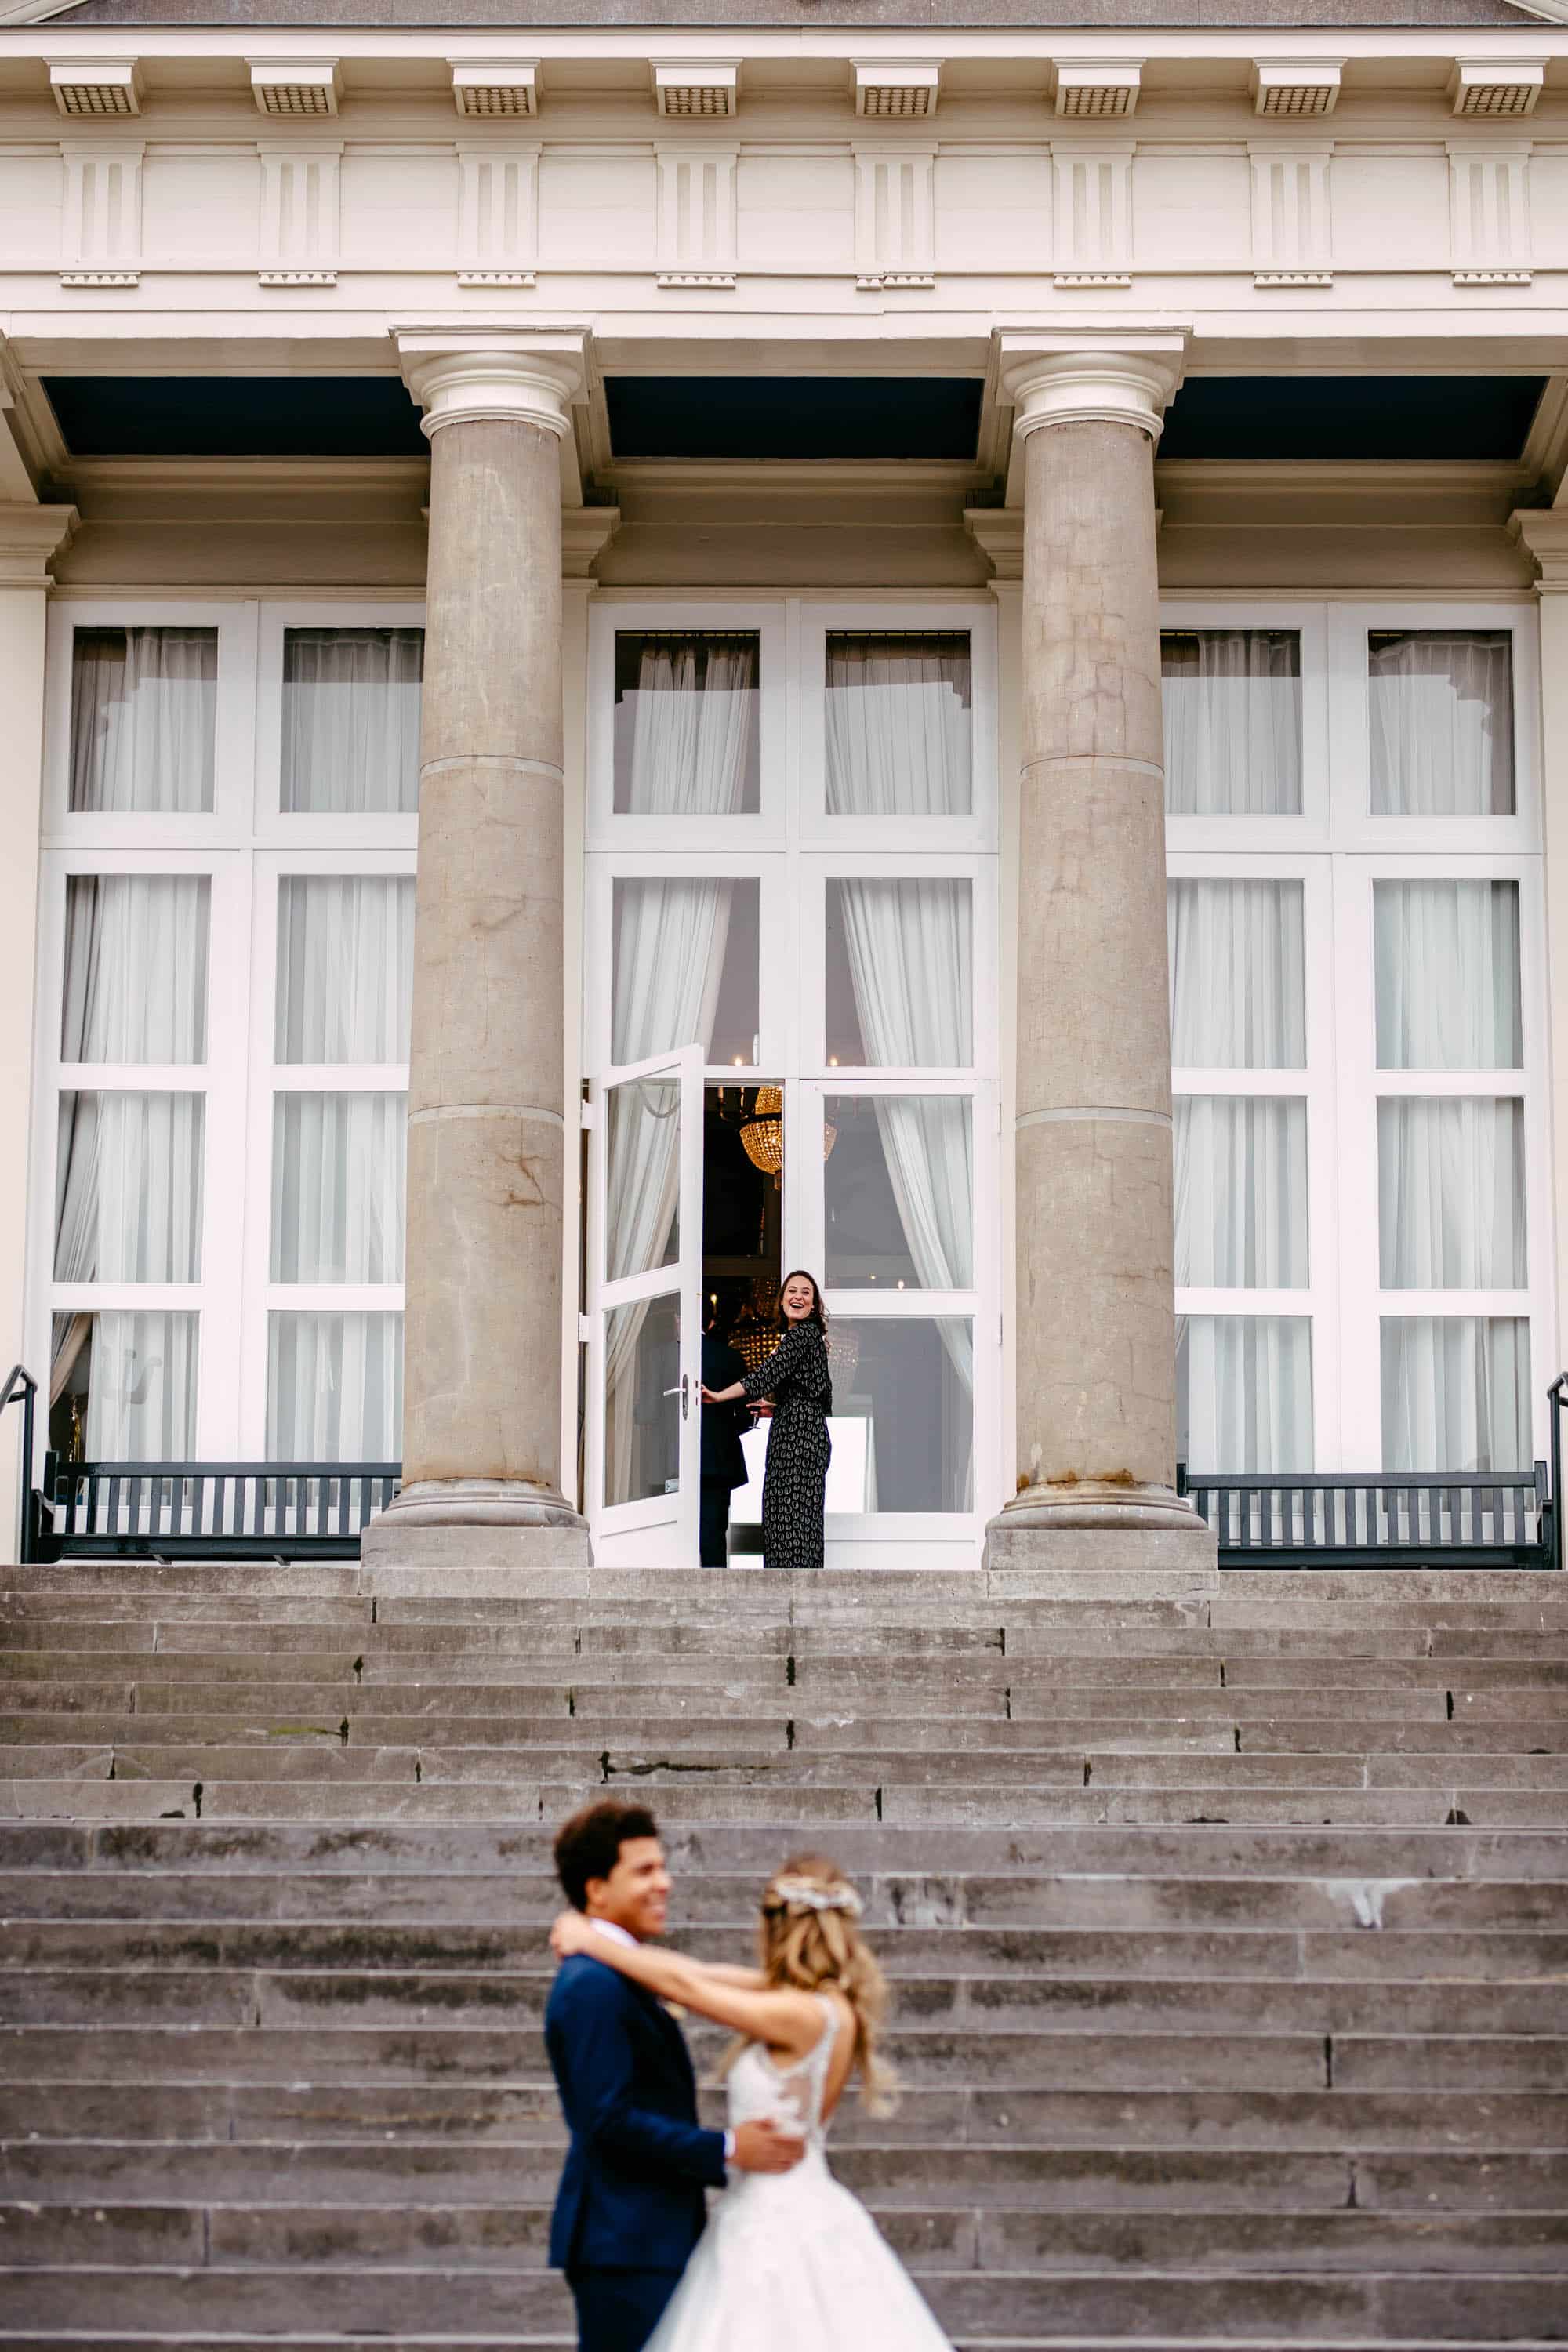 Een bruid en bruidegom staan op de trappen van een gebouw.